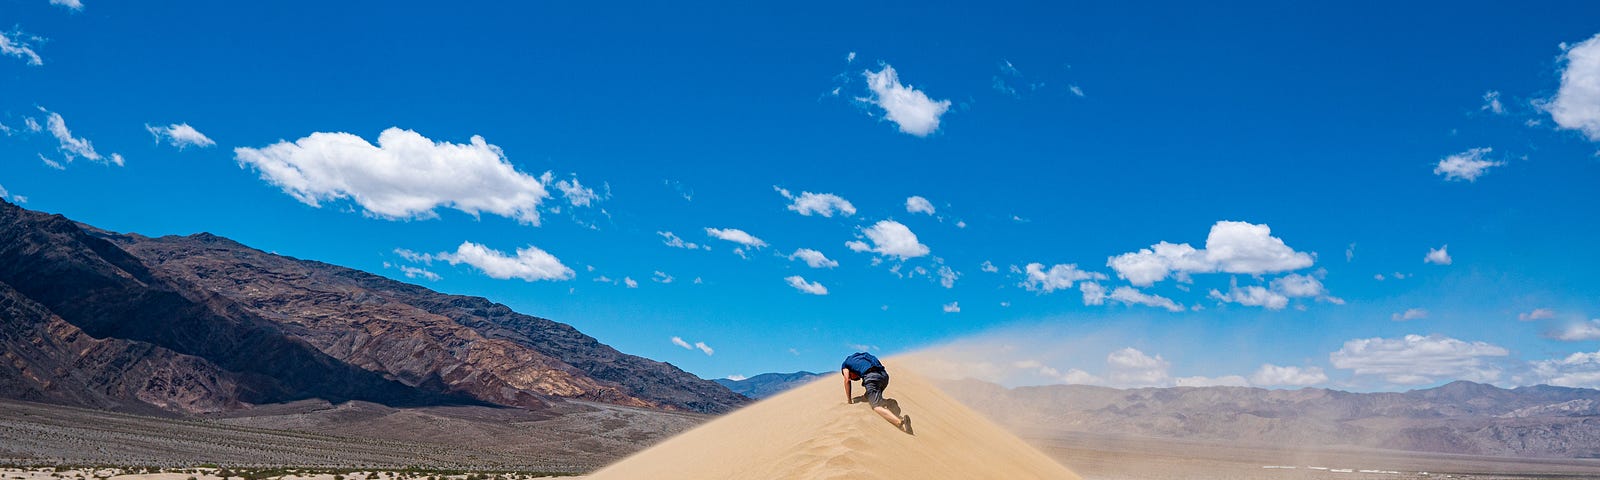 a guy in the desert sand